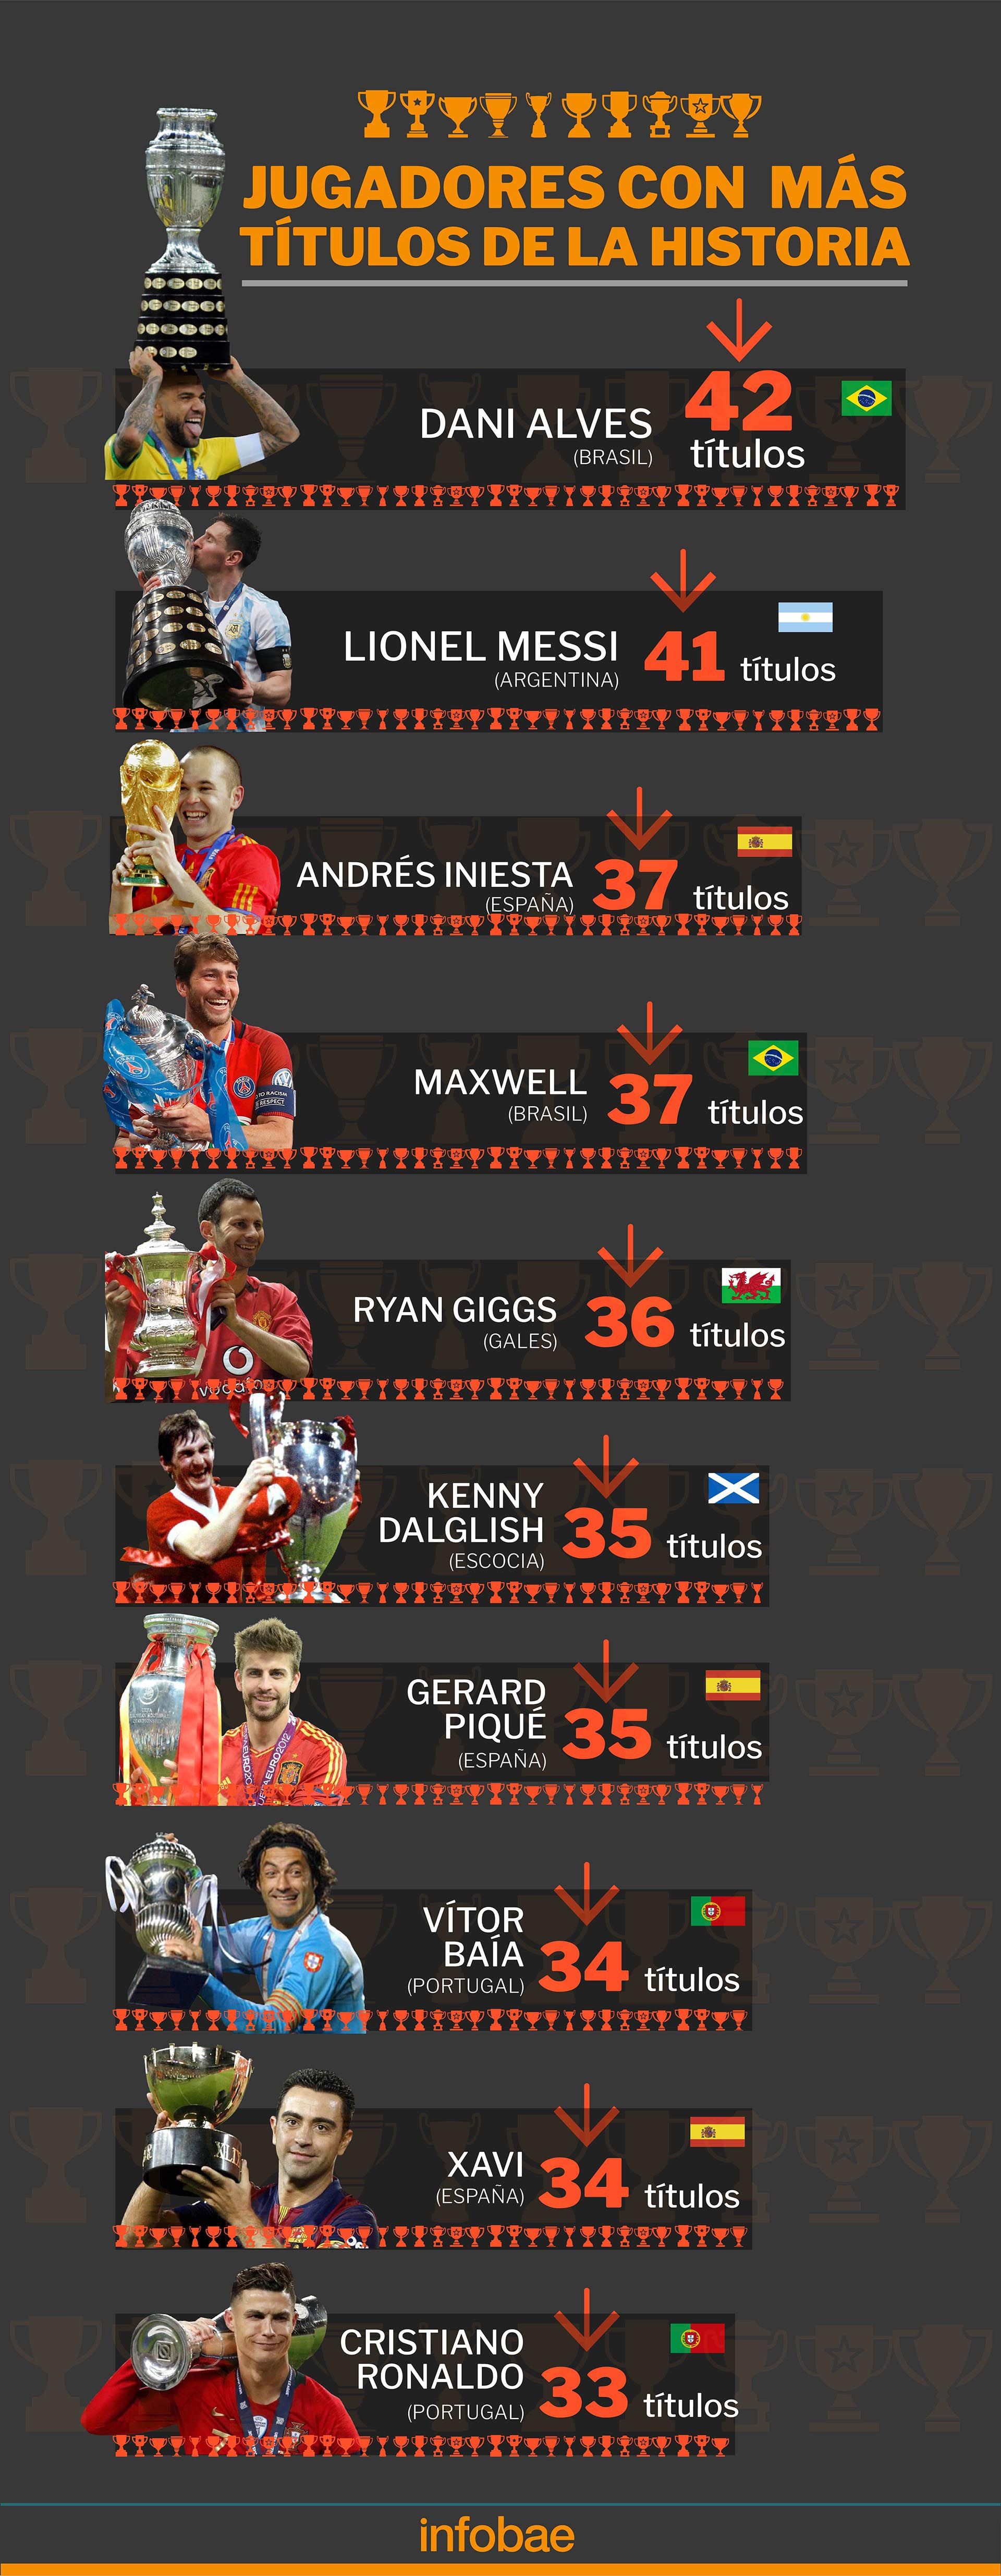 Los jugadores más ganadores de la historia (Marcelo Regalado)